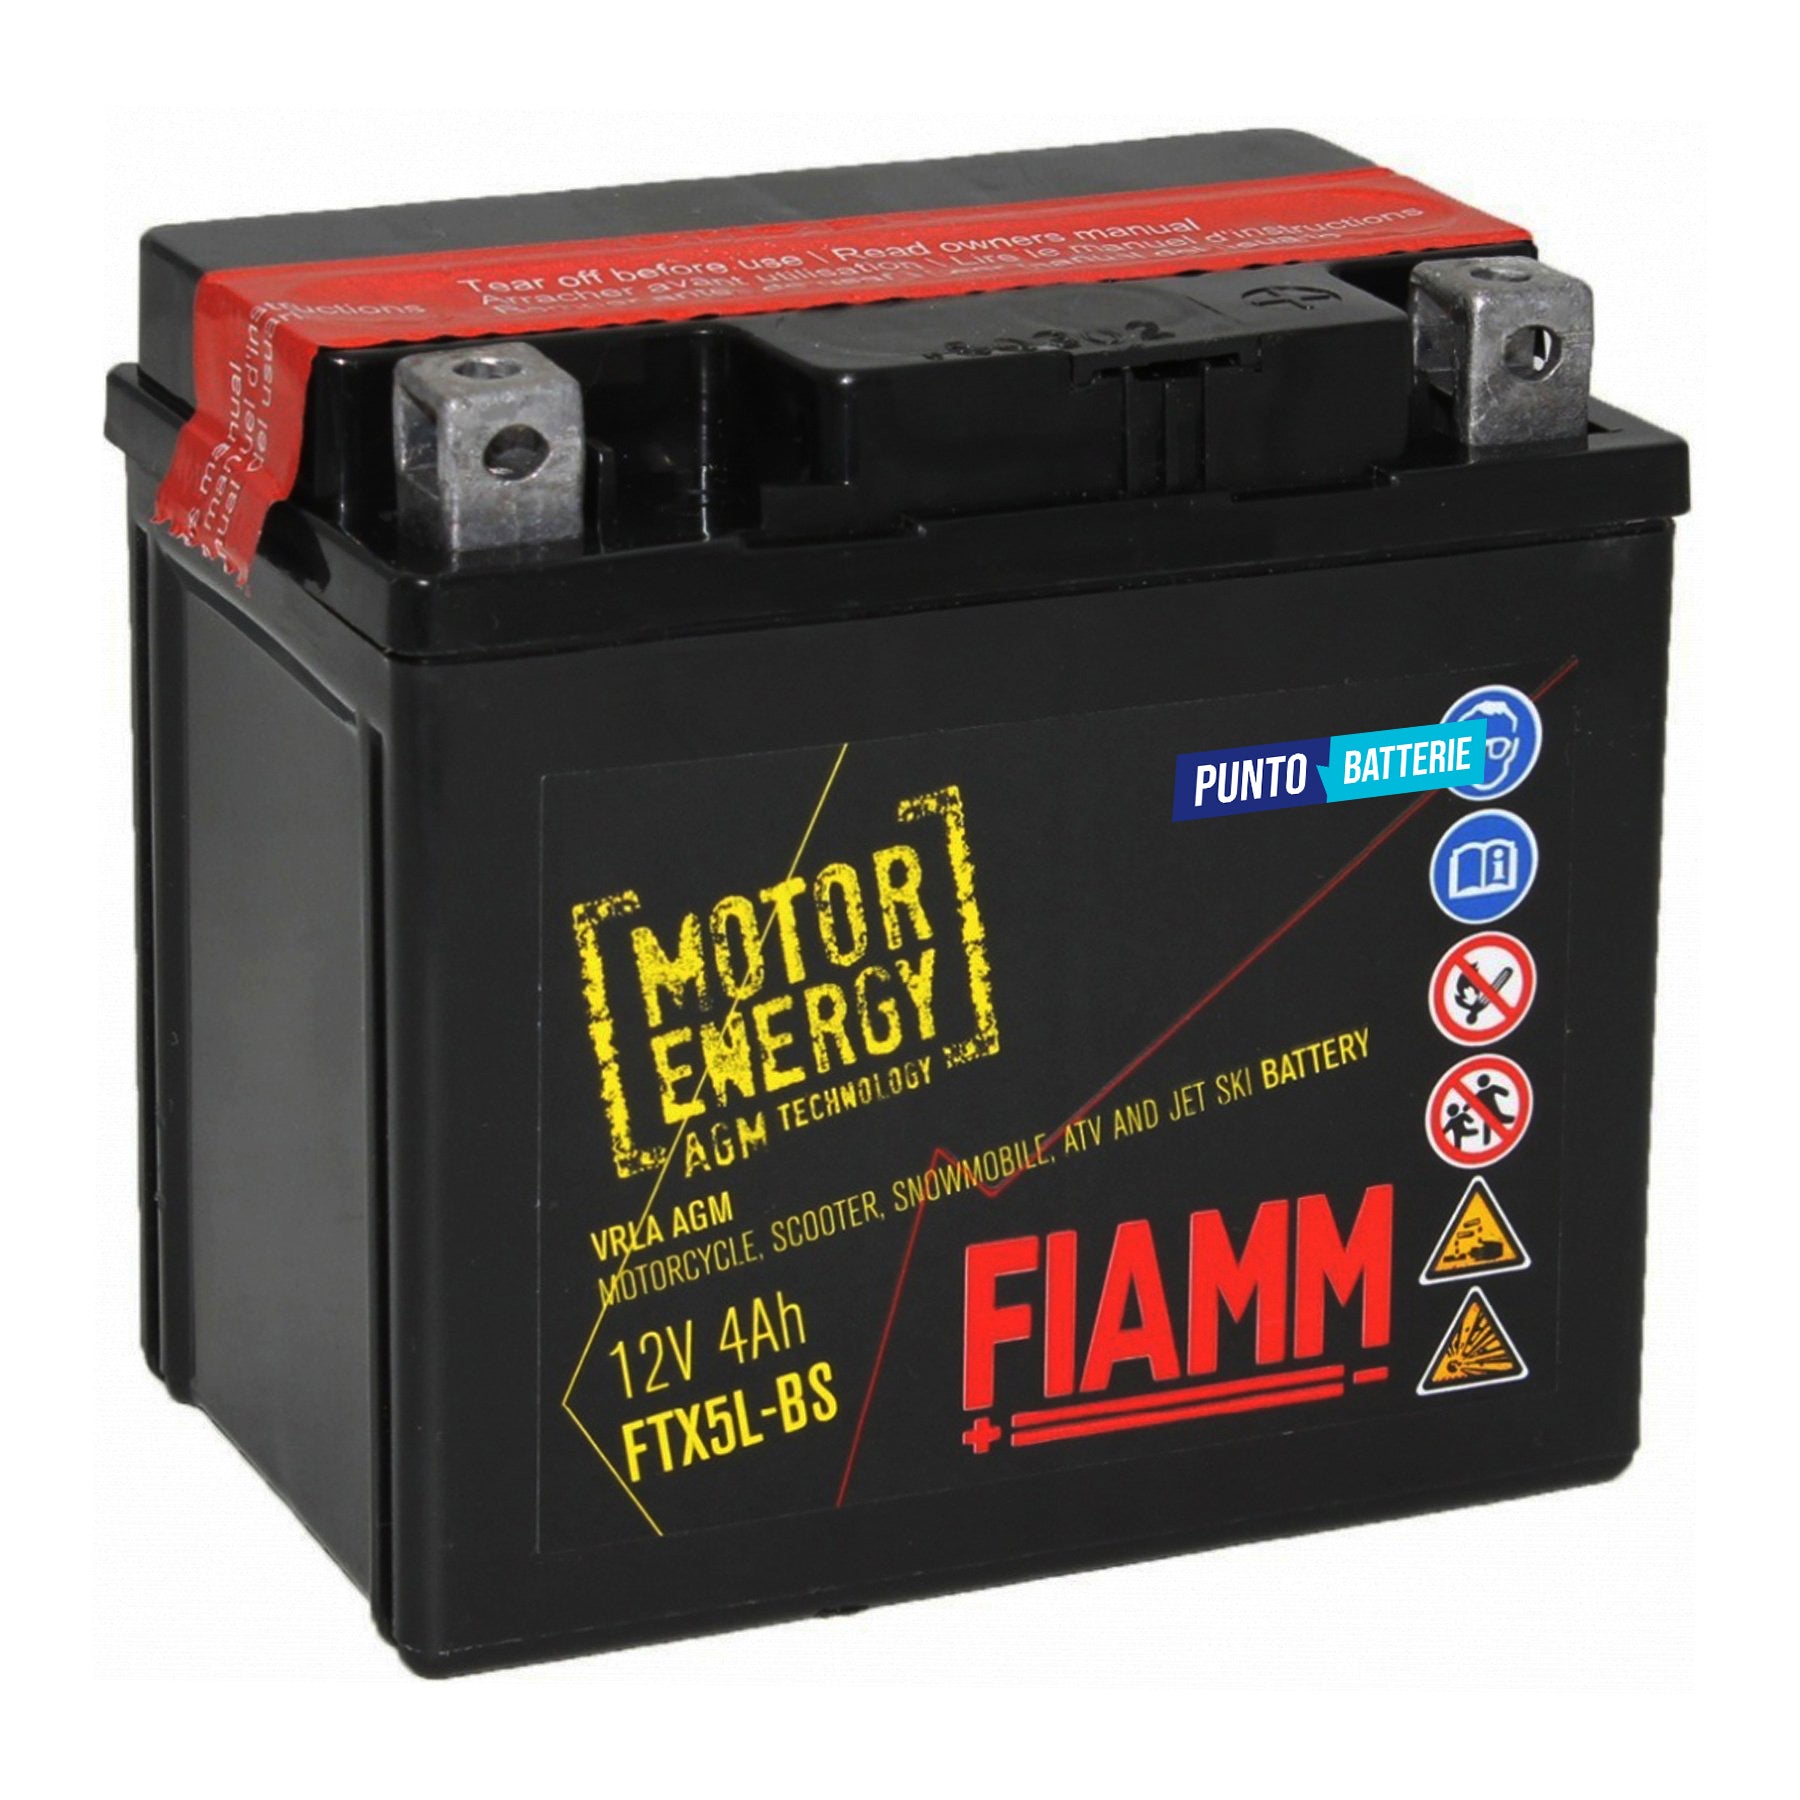 Batteria originale Fiamm Motor Energy AGM FTX5L-BS, dimensioni 113 x 70 x 105, polo positivo a destra, 12 volt, 4 amperora, 80 ampere. Batteria per moto, scooter e powersport.